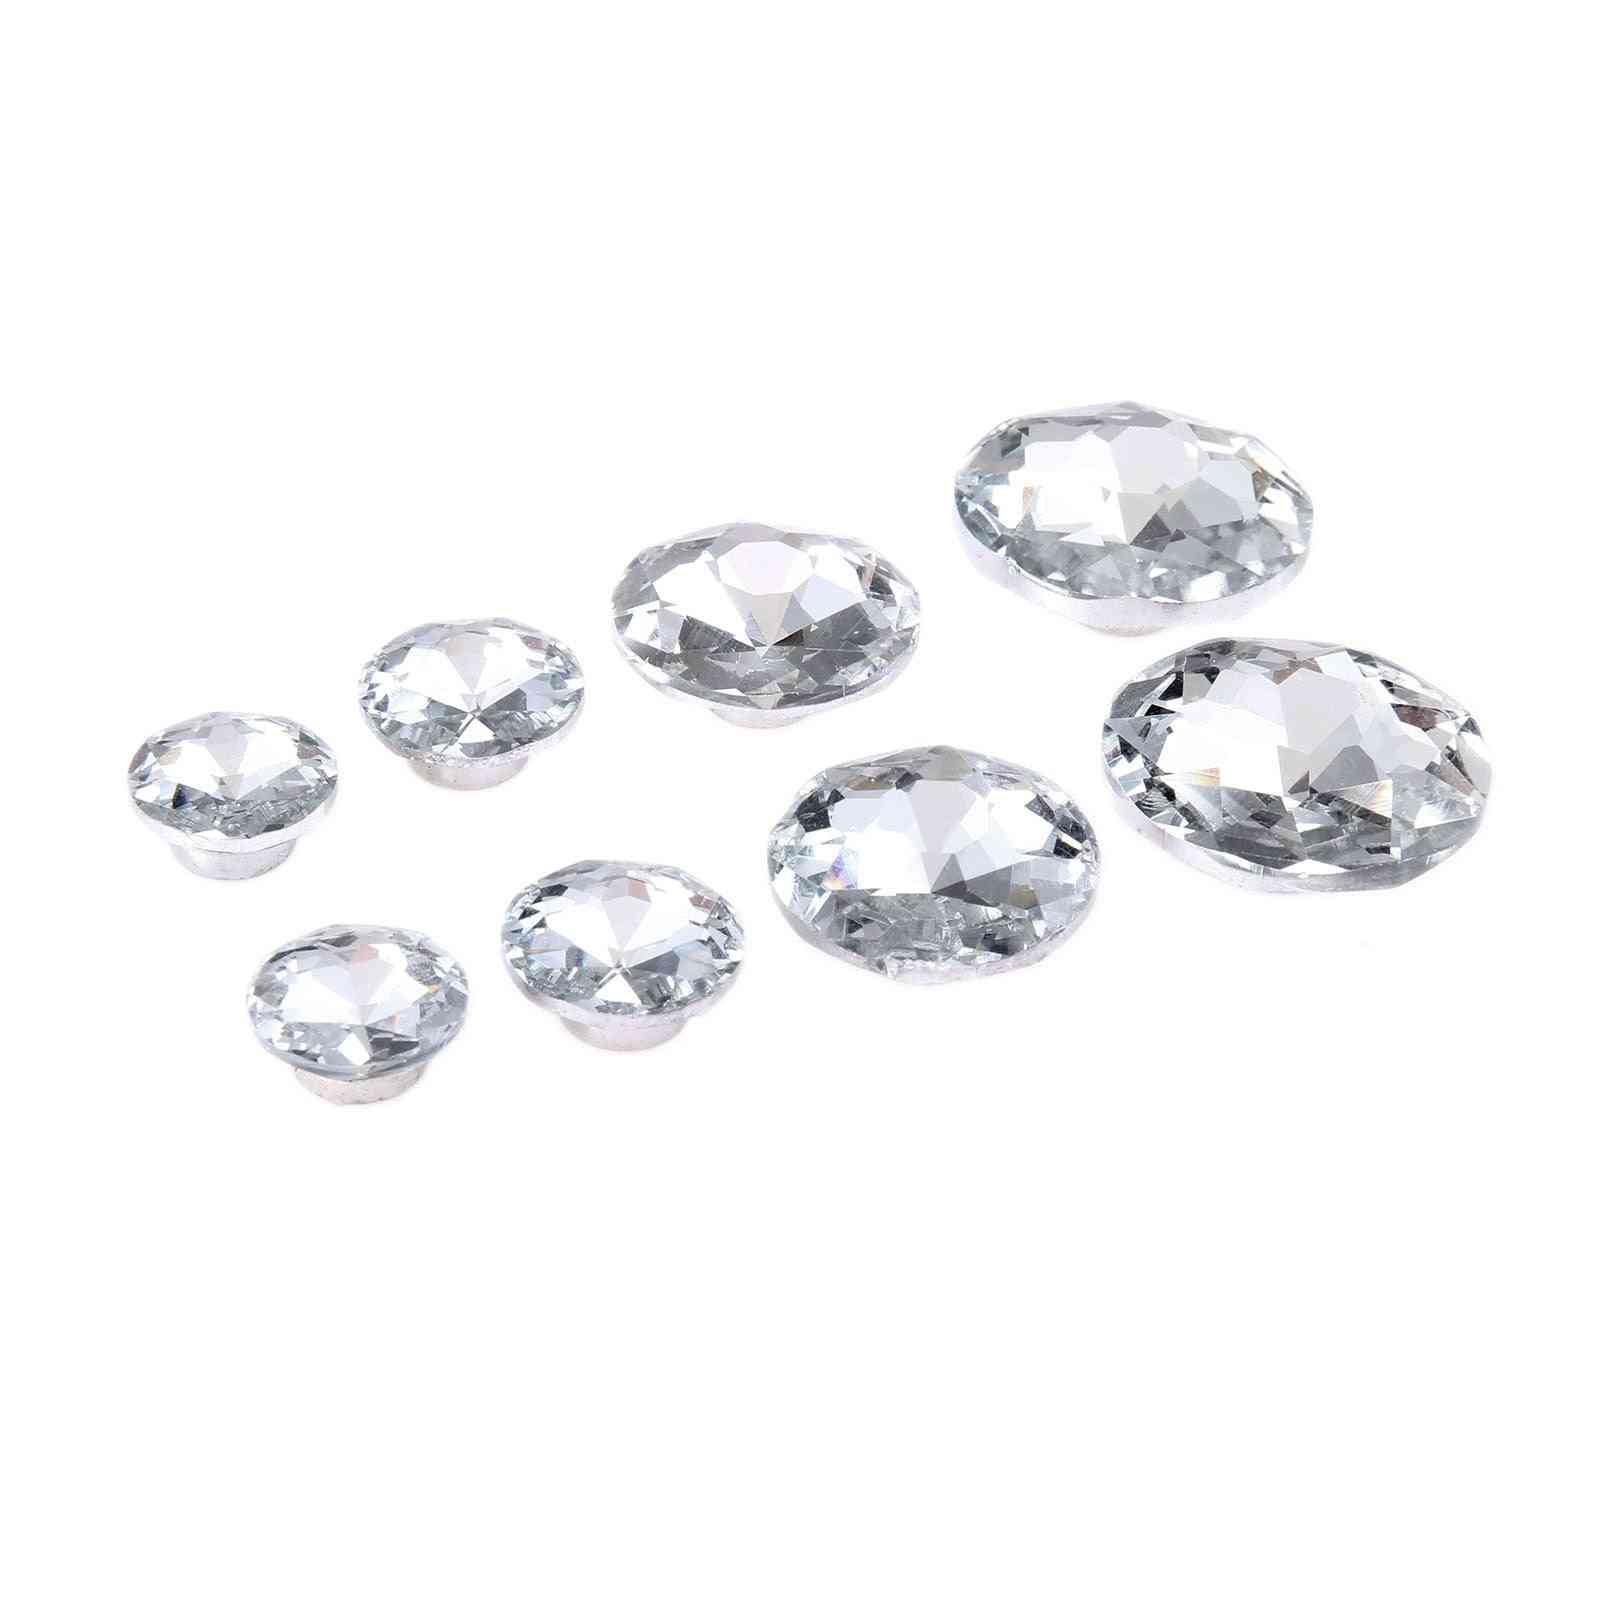 Diamantový krystal čalounění hřebíky knoflík cvočky cvočky kolíky